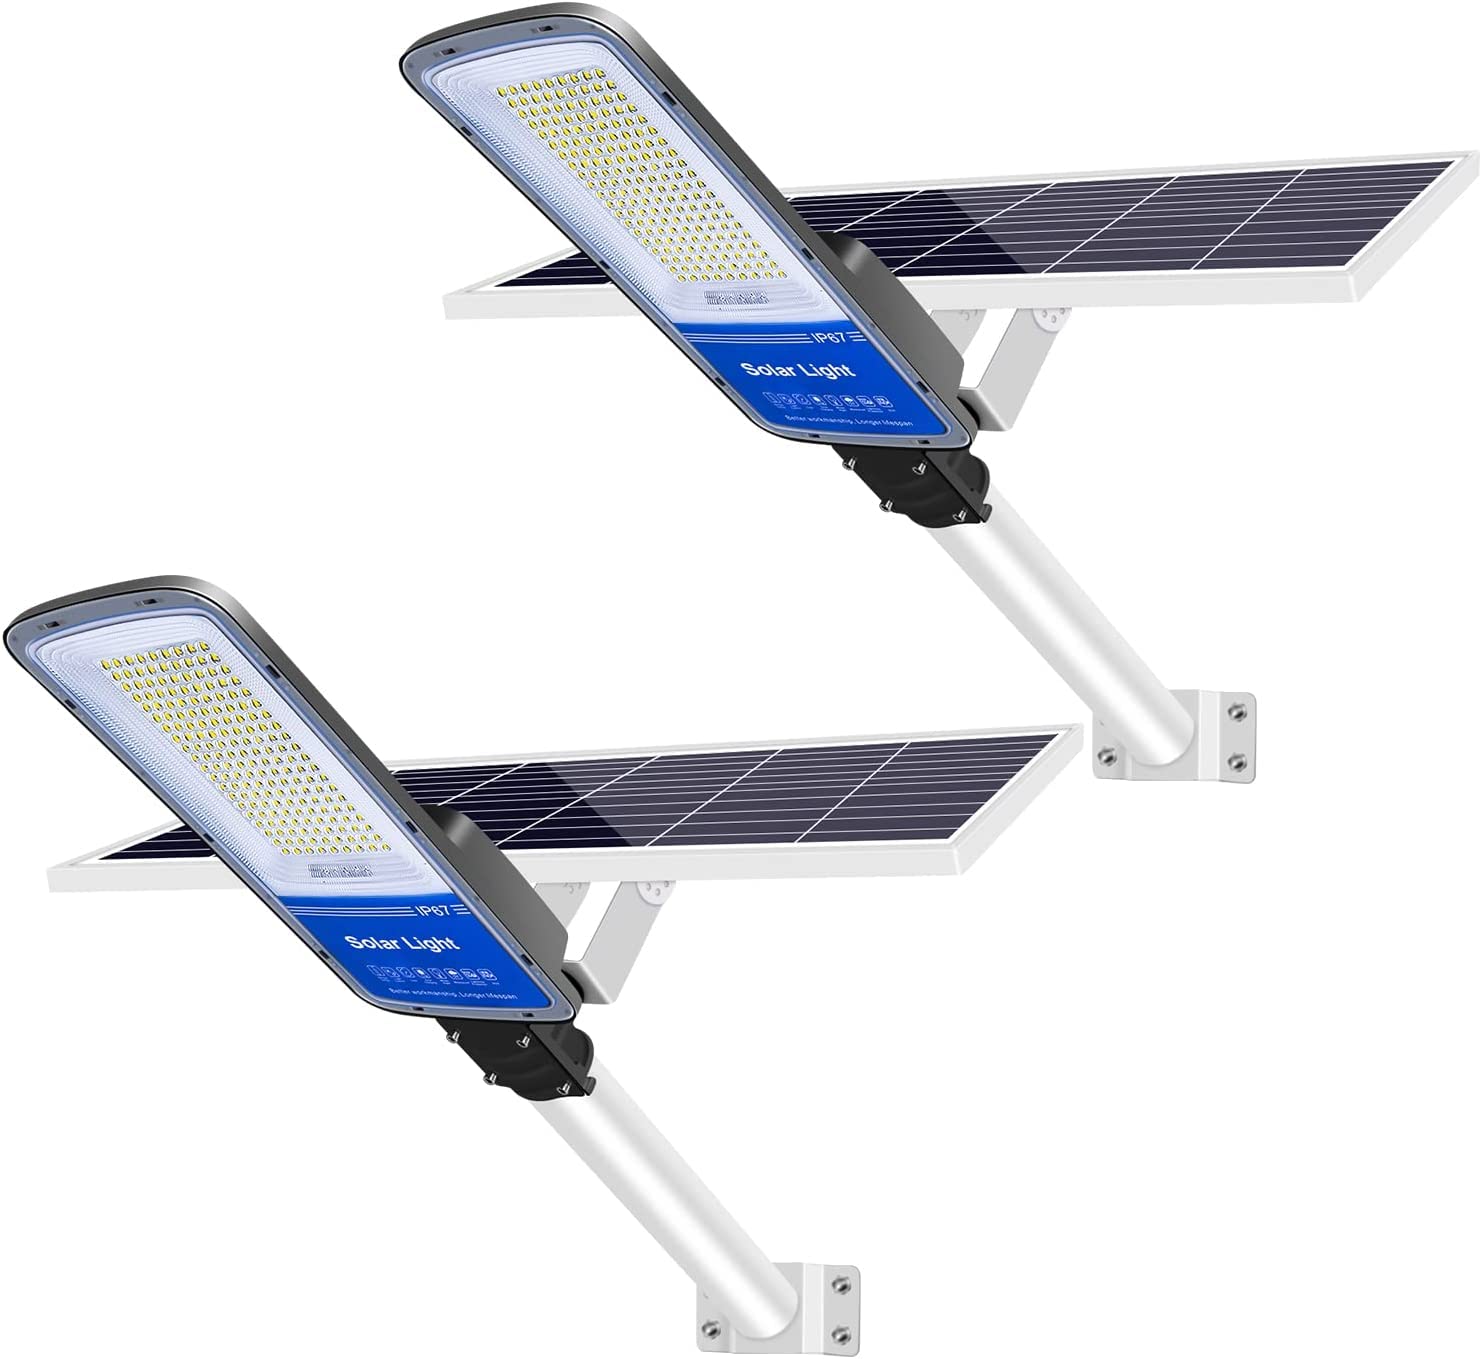 2 Pack 400W Straßenlampe Solar Straßenlaternen Dämmerung bis zum Morgengrauen für den Außenbereich Solarlampen mit Fernbedienung und Solarpanel Kaltesweiß 6000K Solar Flutlichter wasserdichte IP65